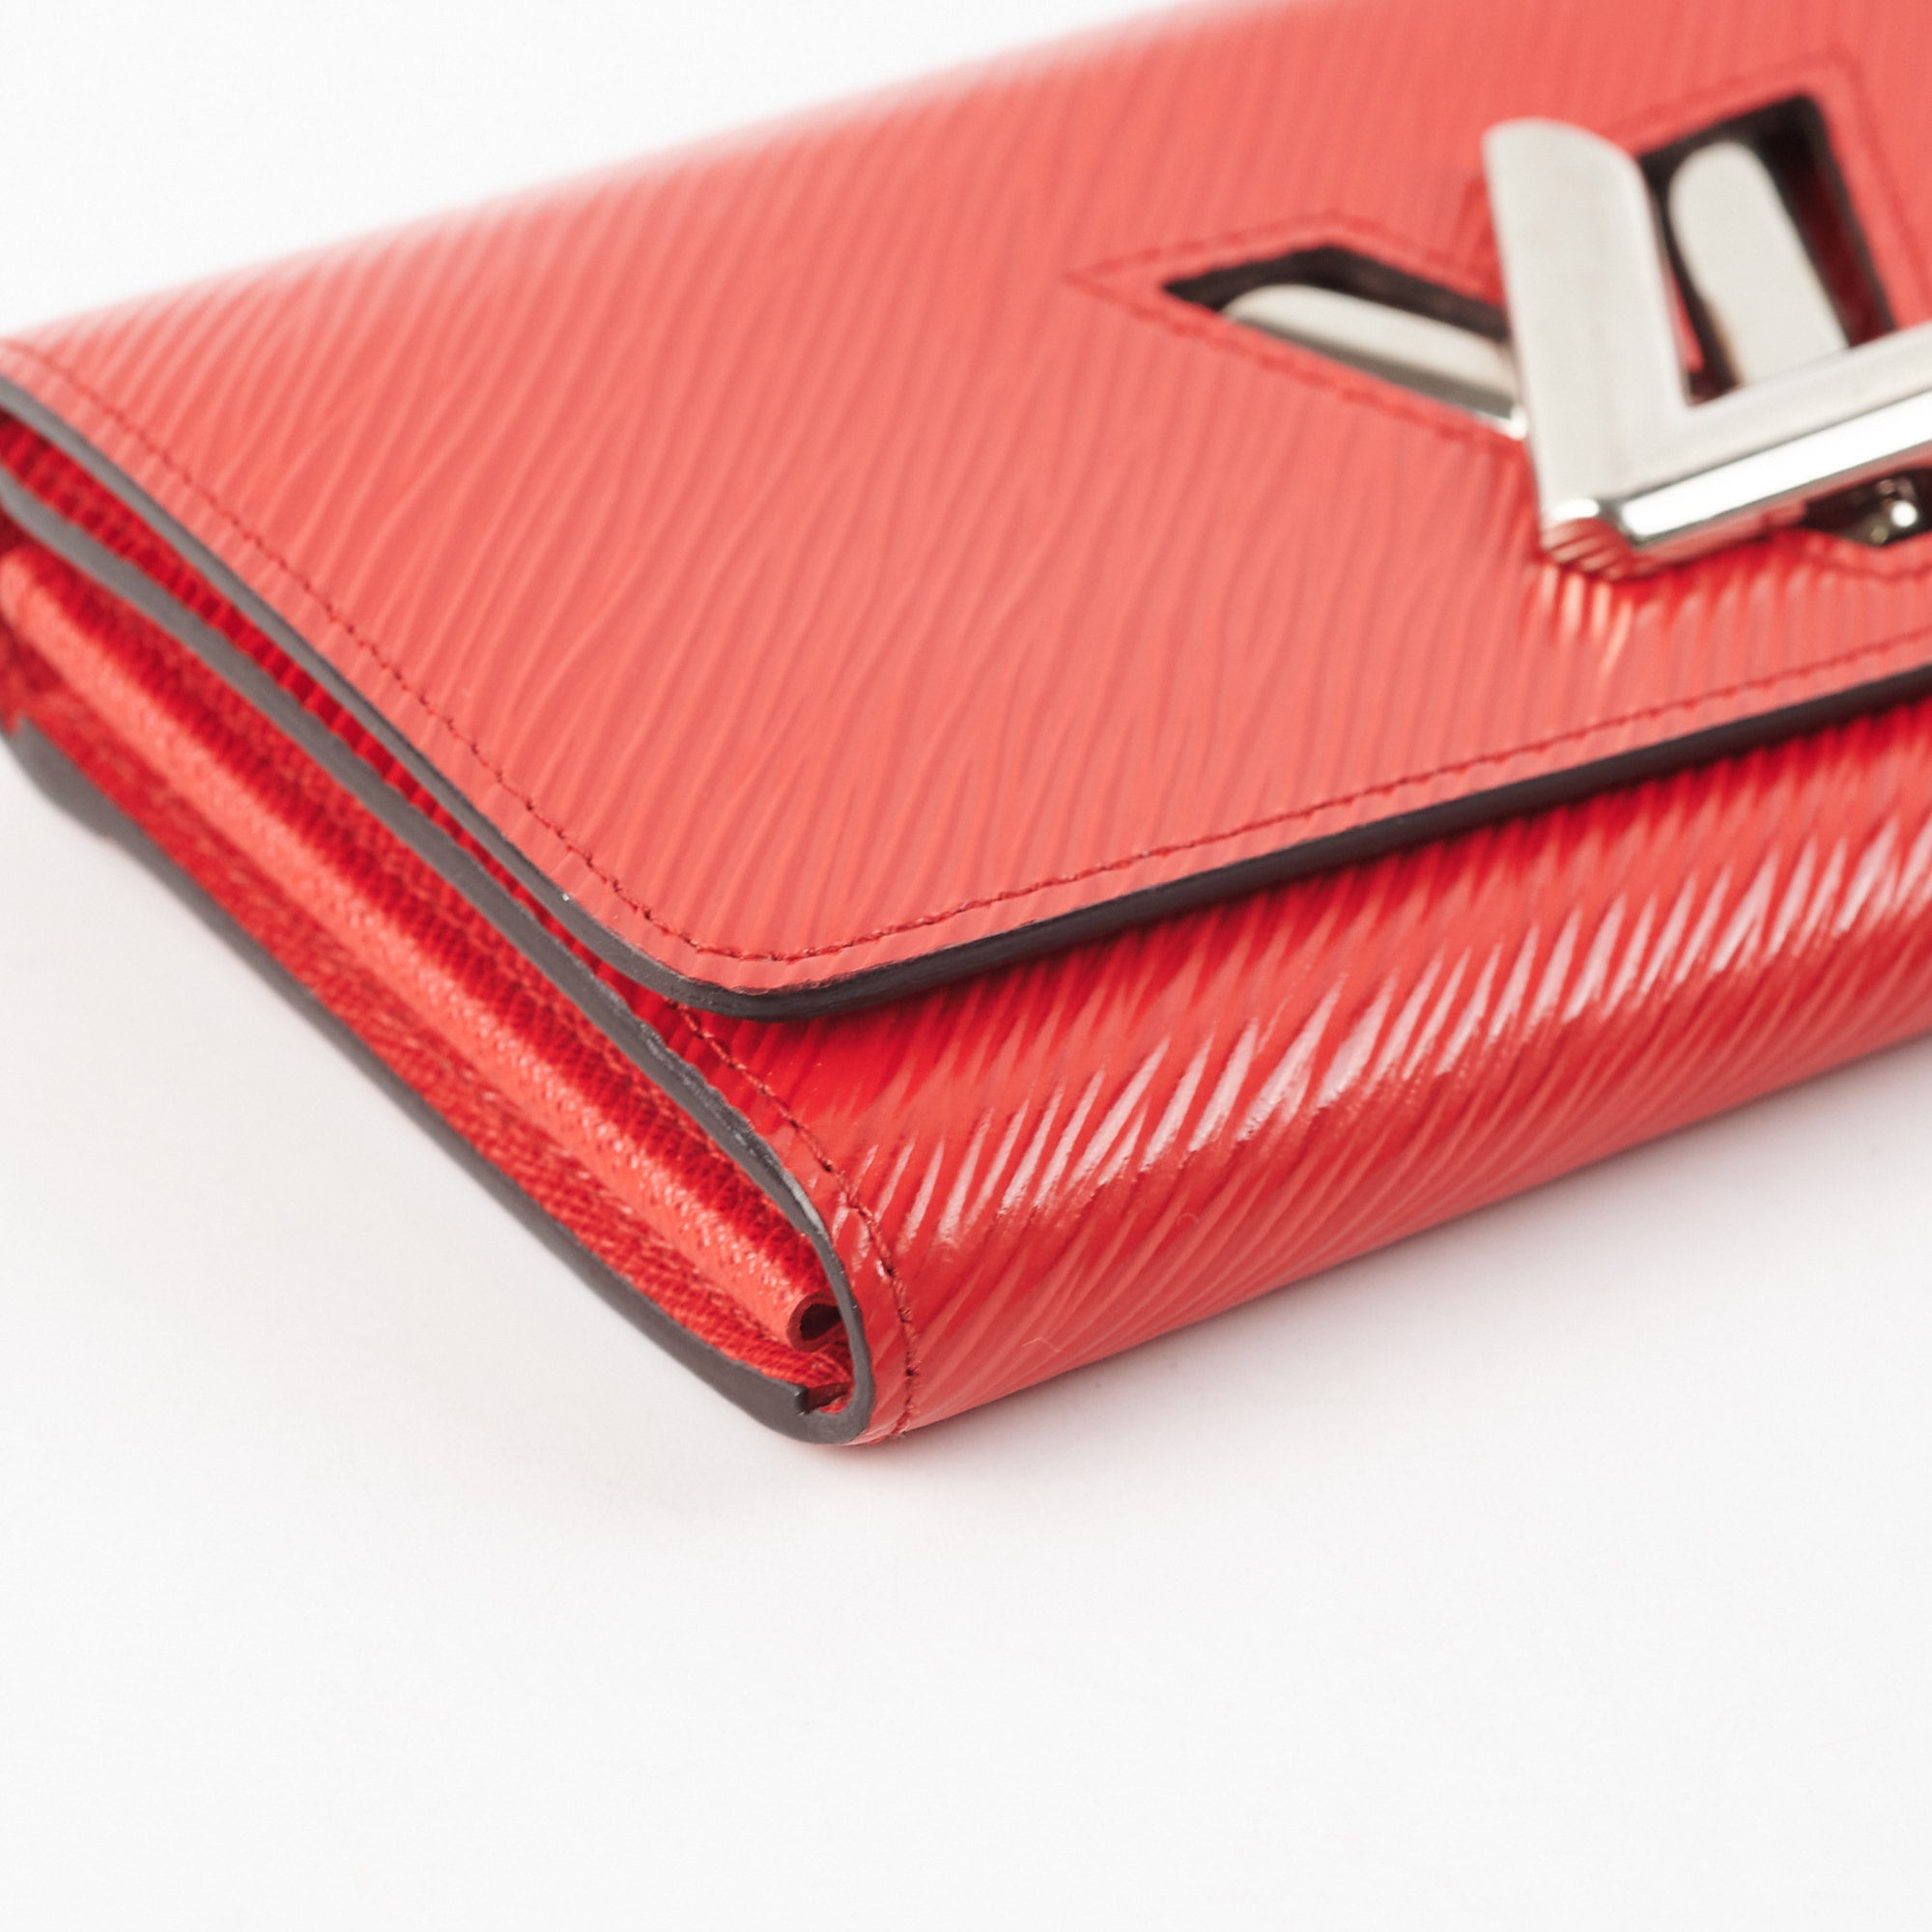 Louis Vuitton Twist Bag Red - THE PURSE AFFAIR